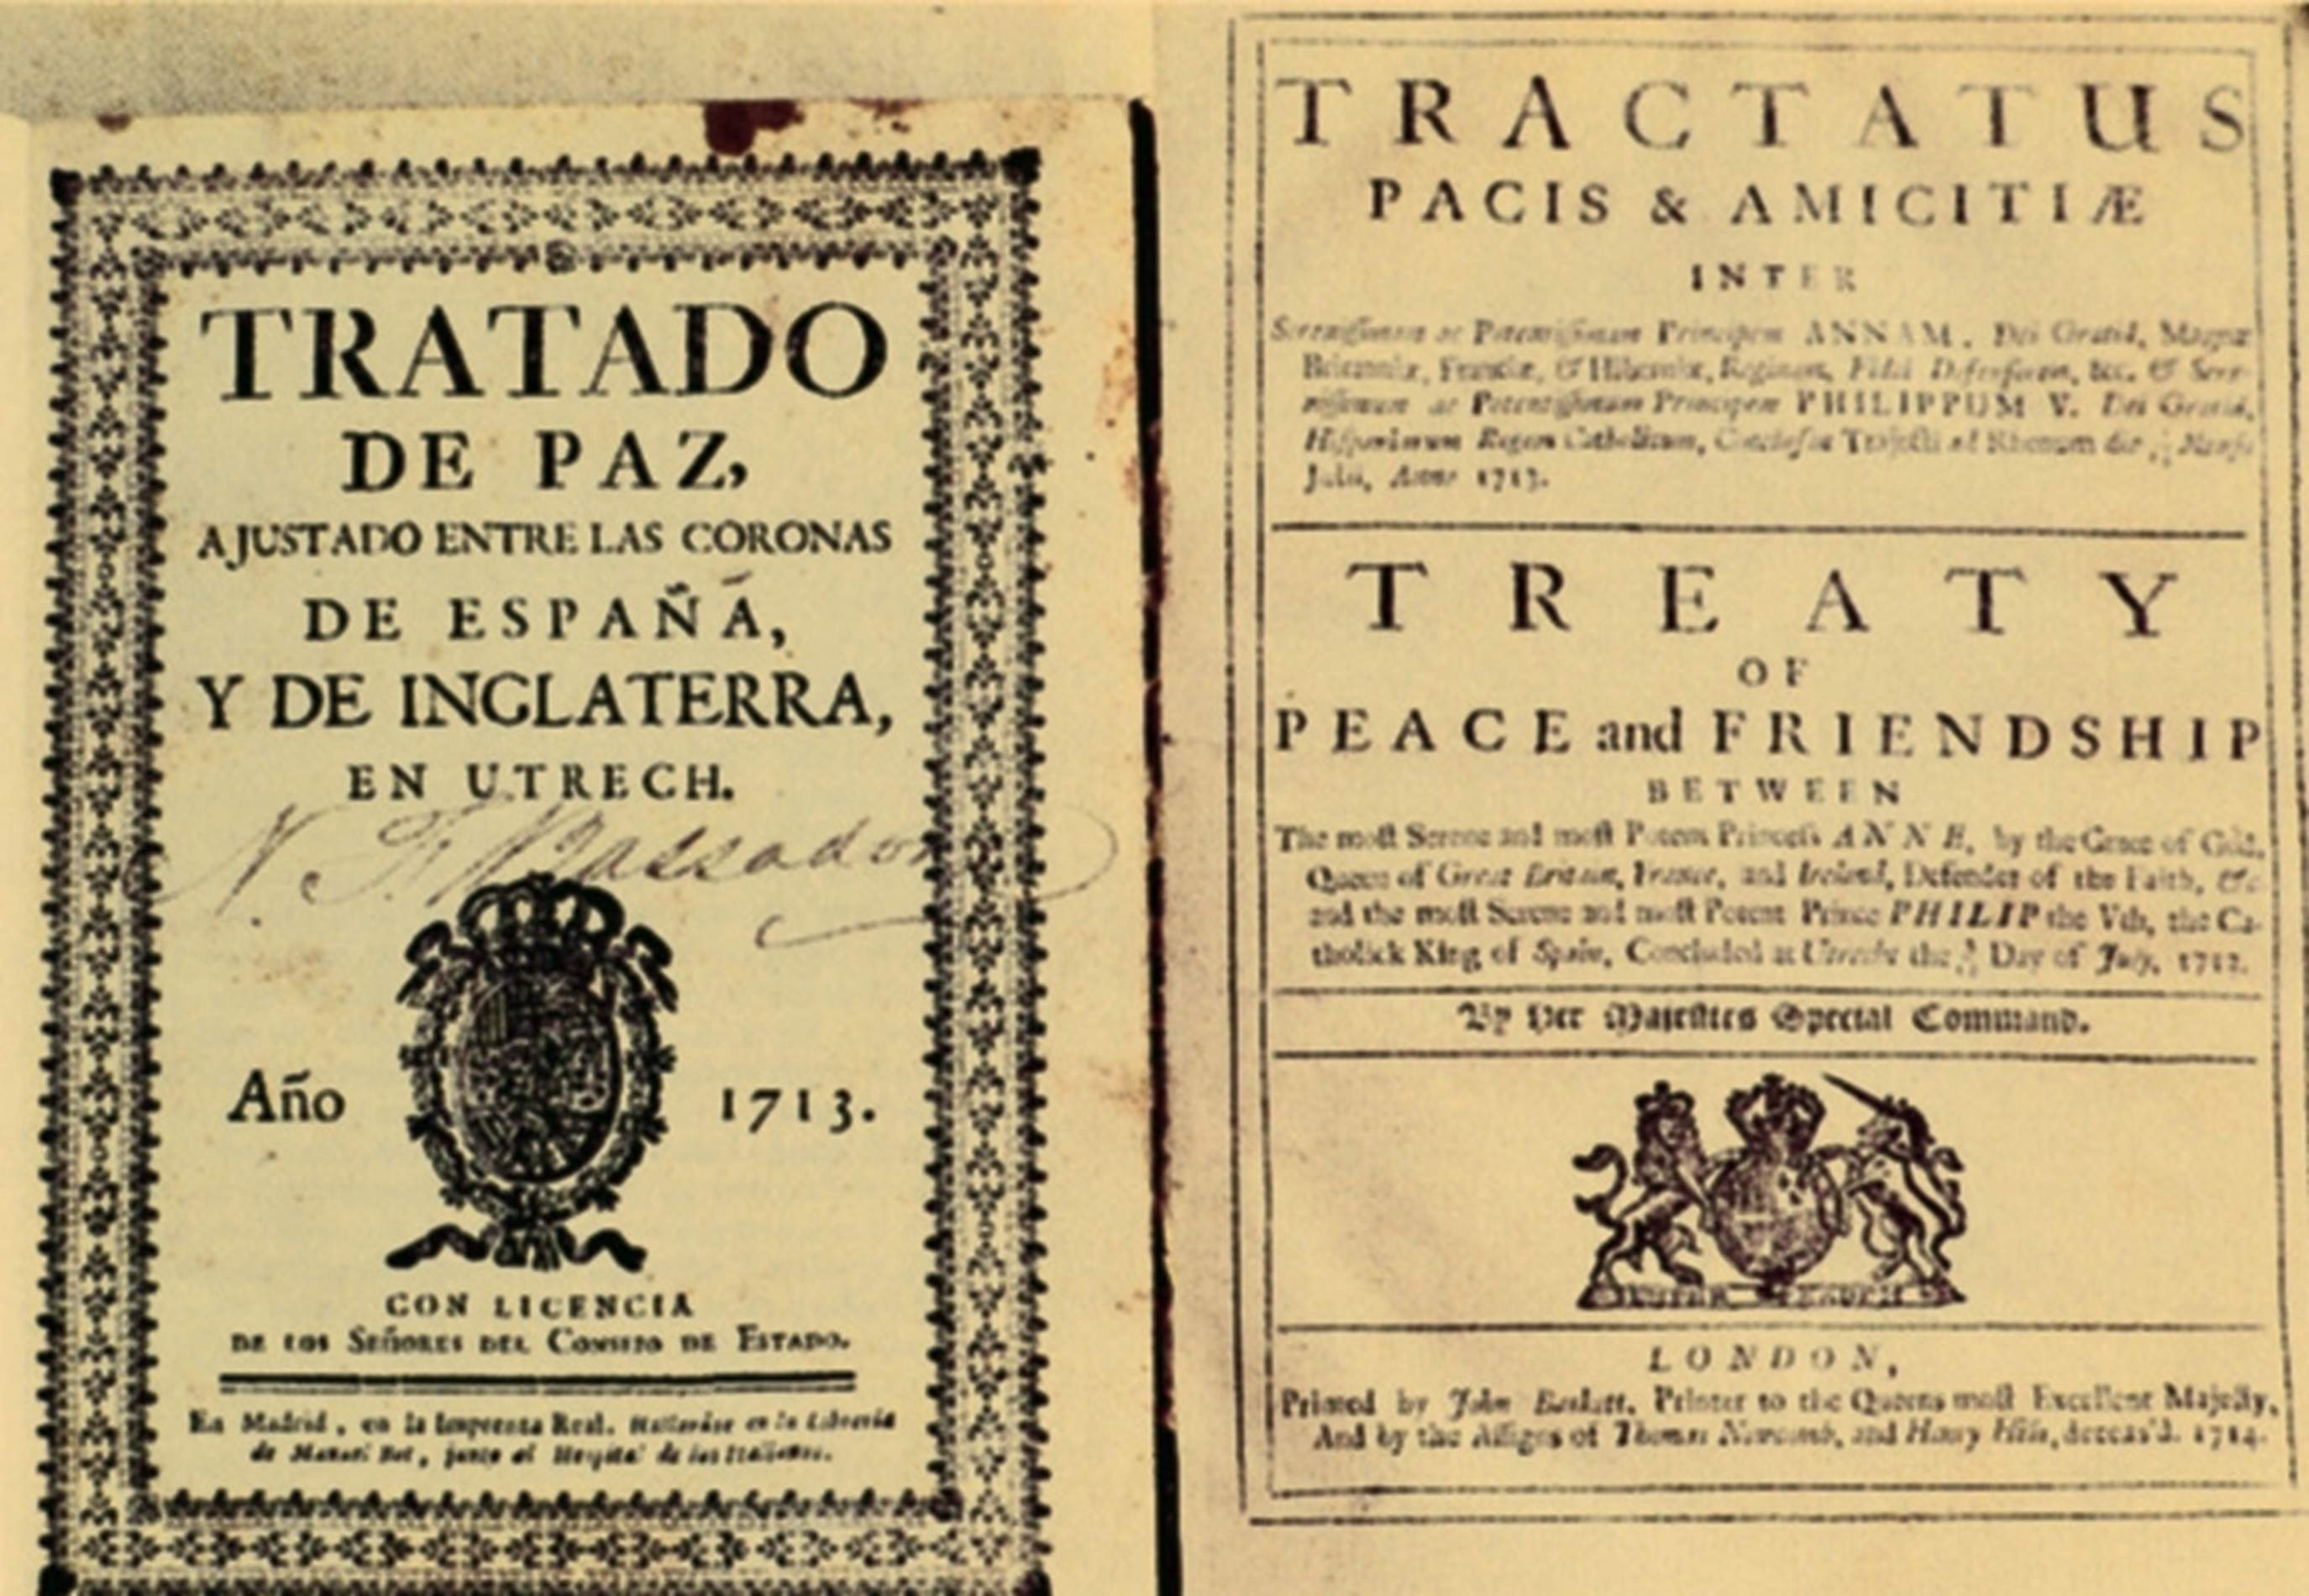 Tractat d'Utrecht. Font Enciclopedia Catalana